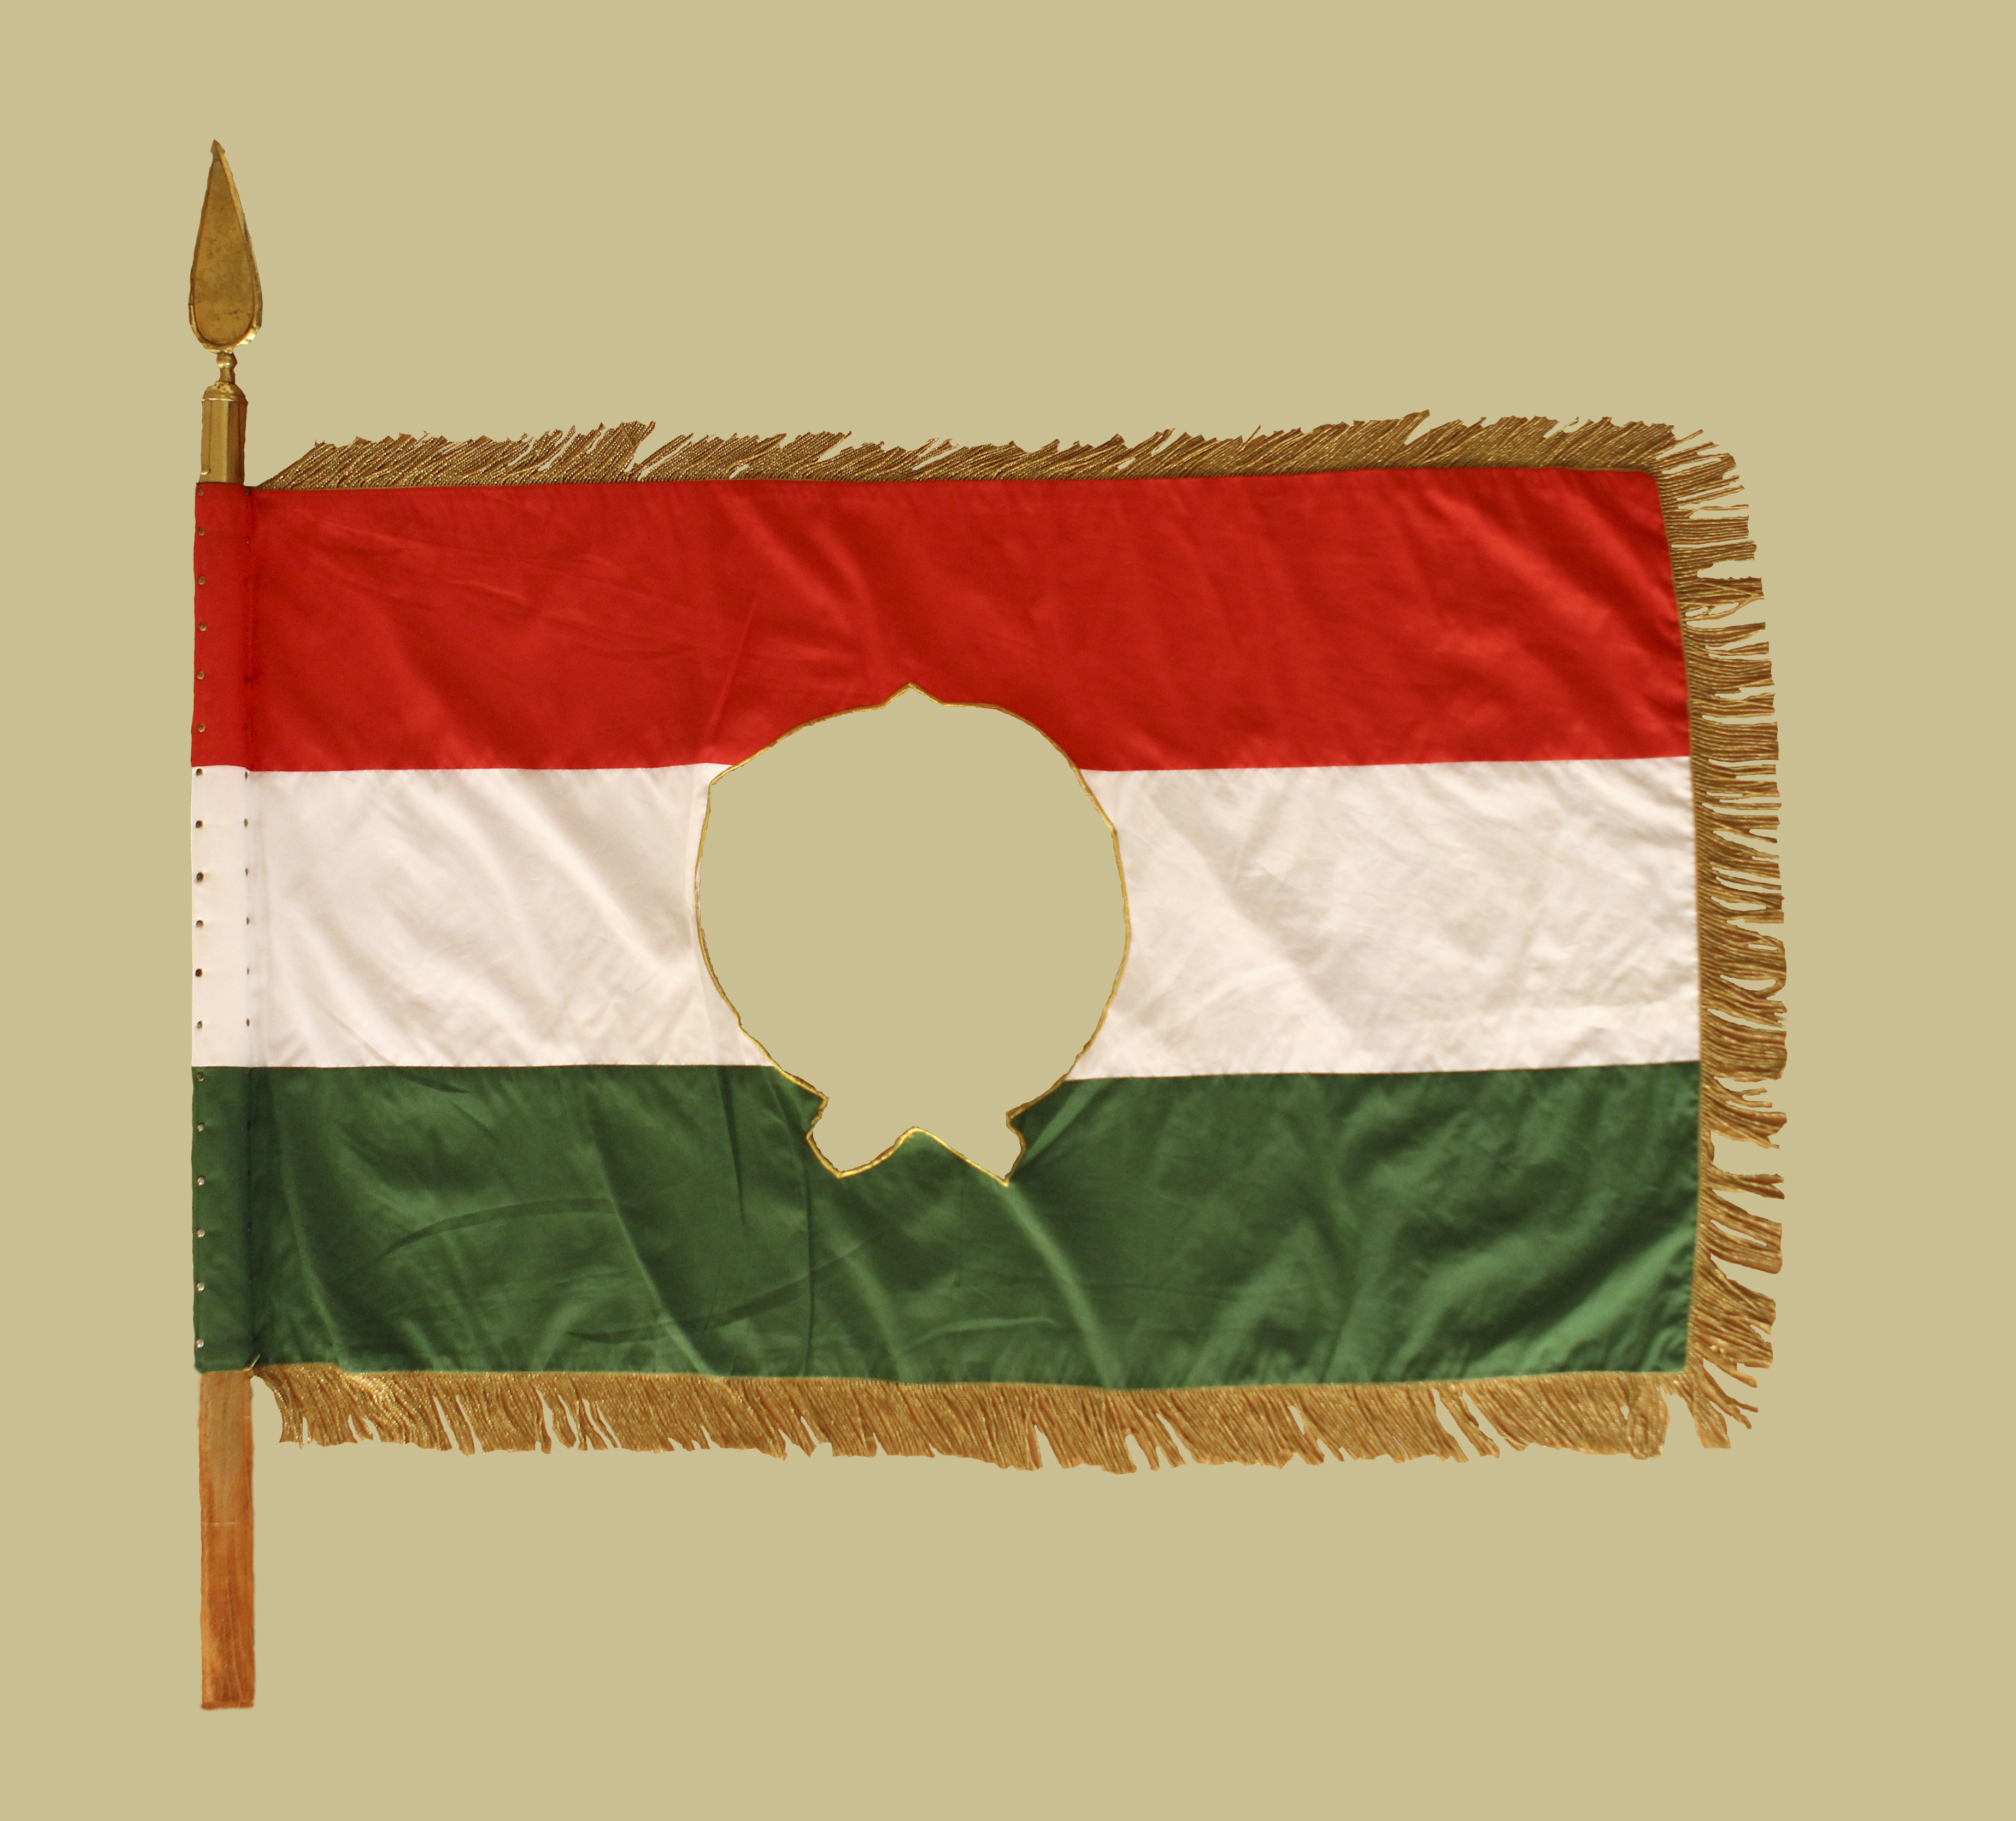 1956 jelképe – a lyukas közepű zászló